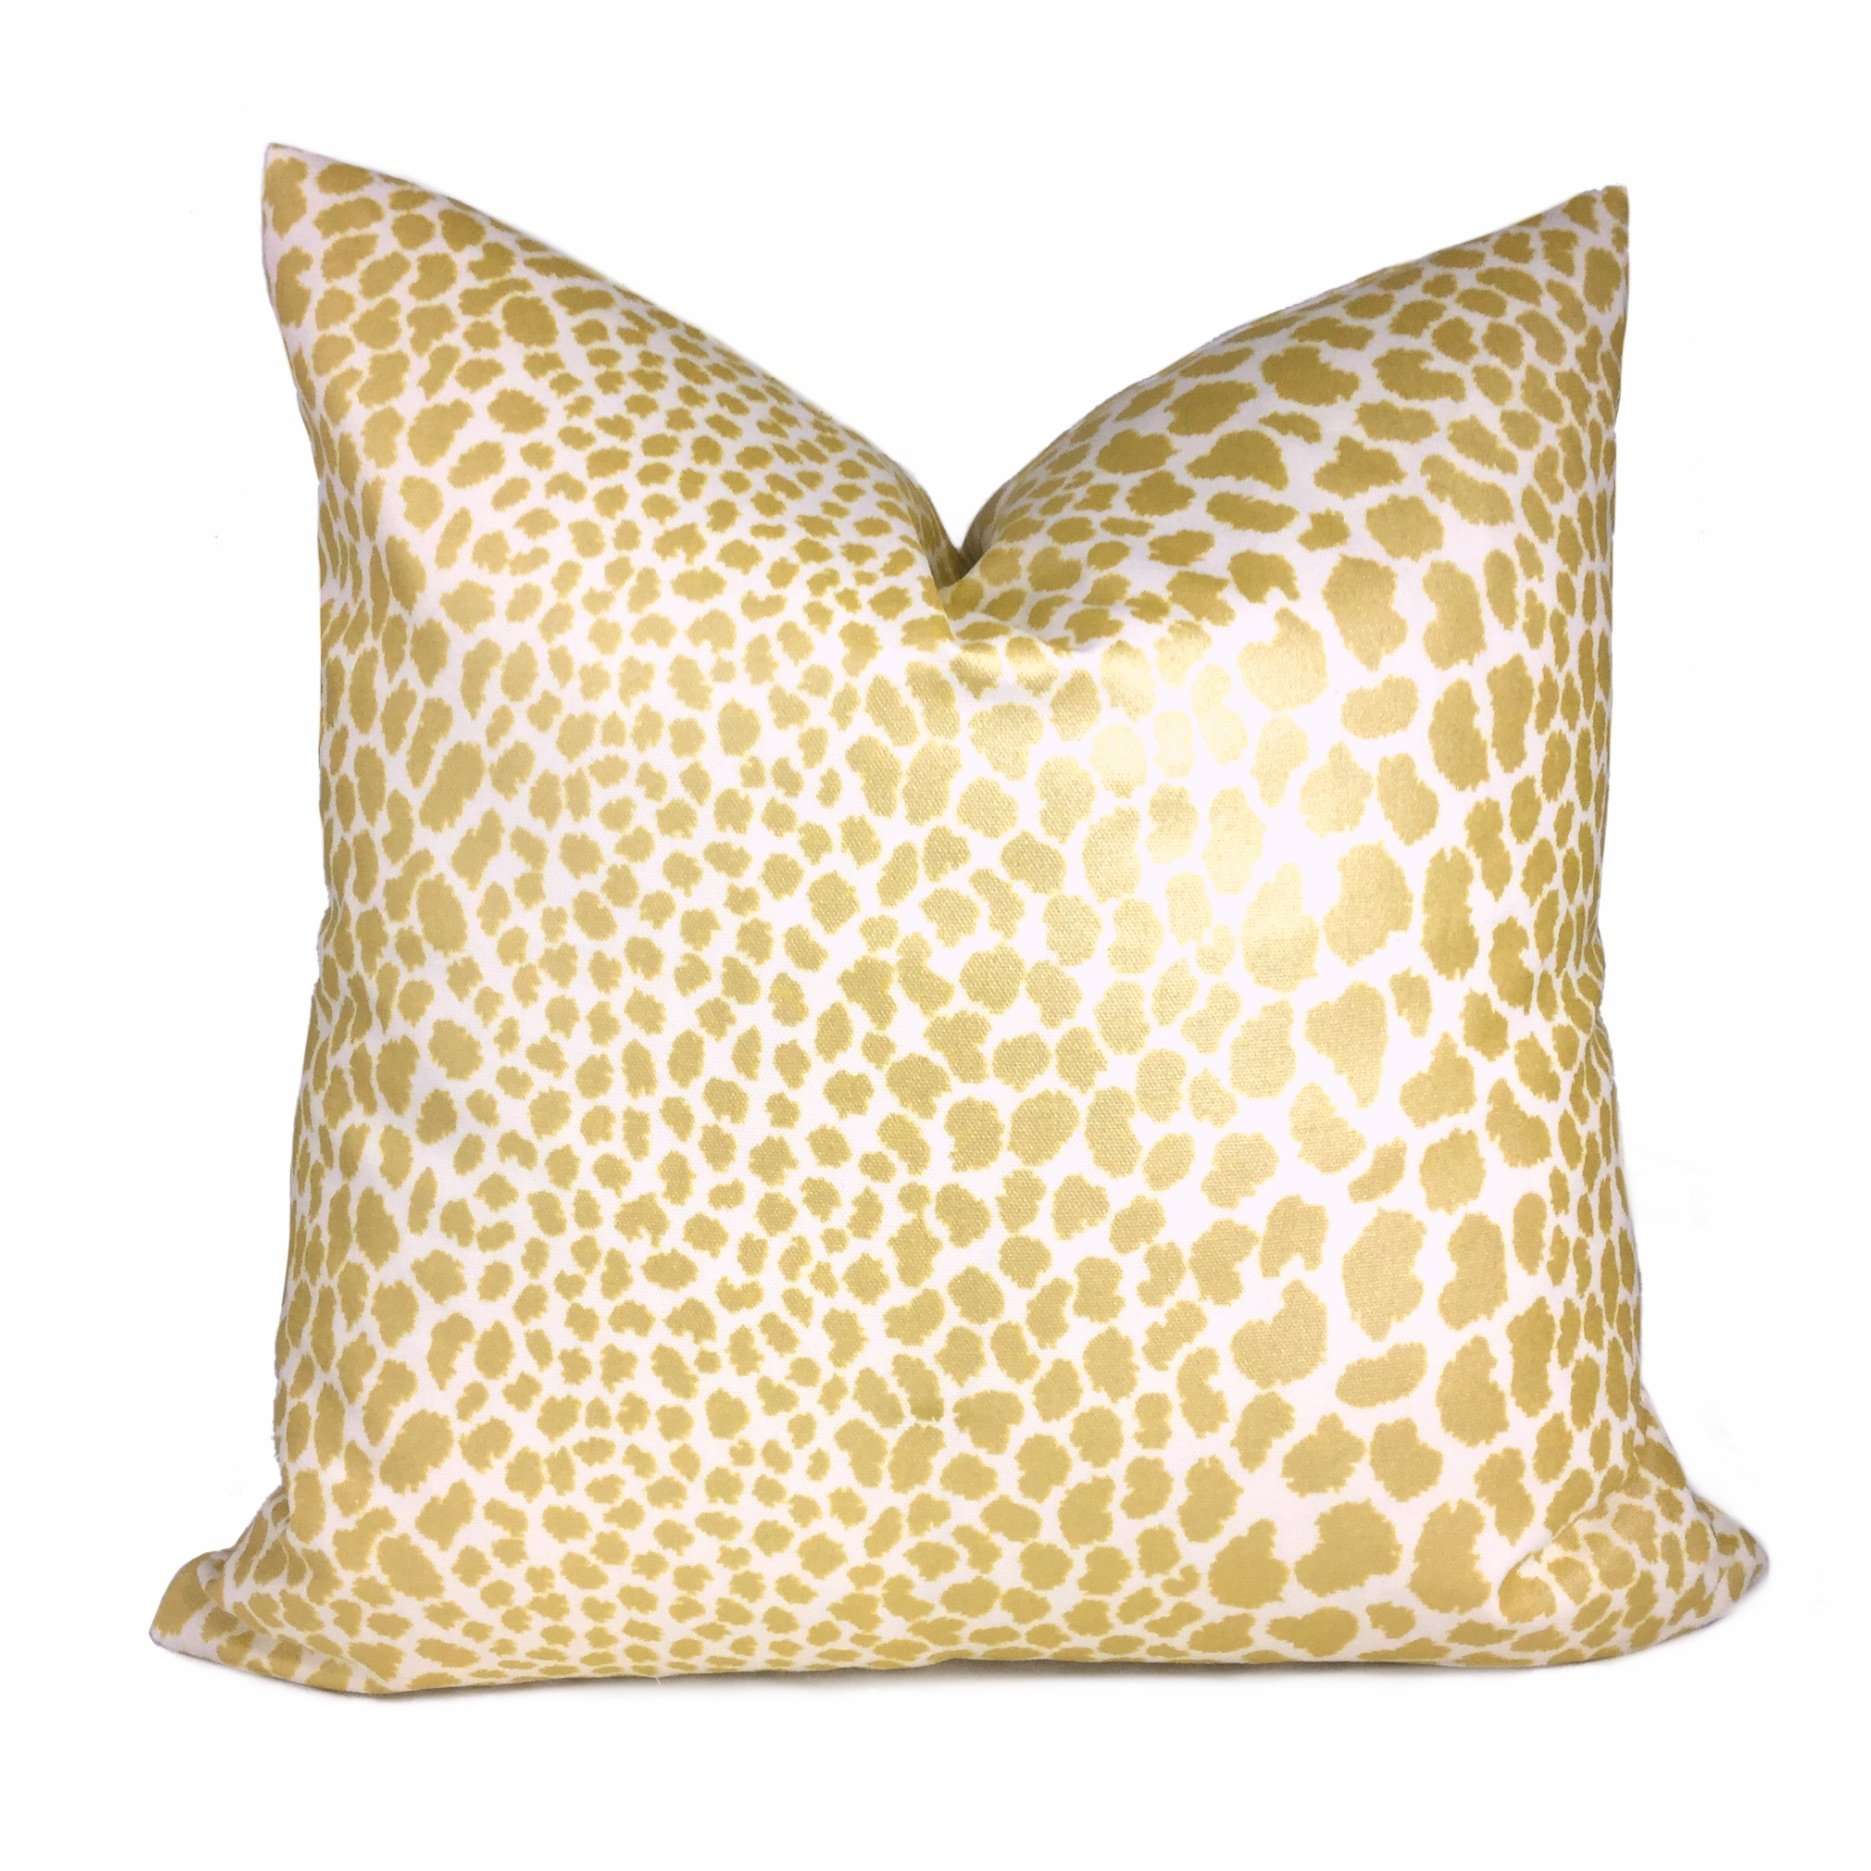 Metallic Gold Cream Leopard Spot Cotton Print 20x20 Pillow Cover